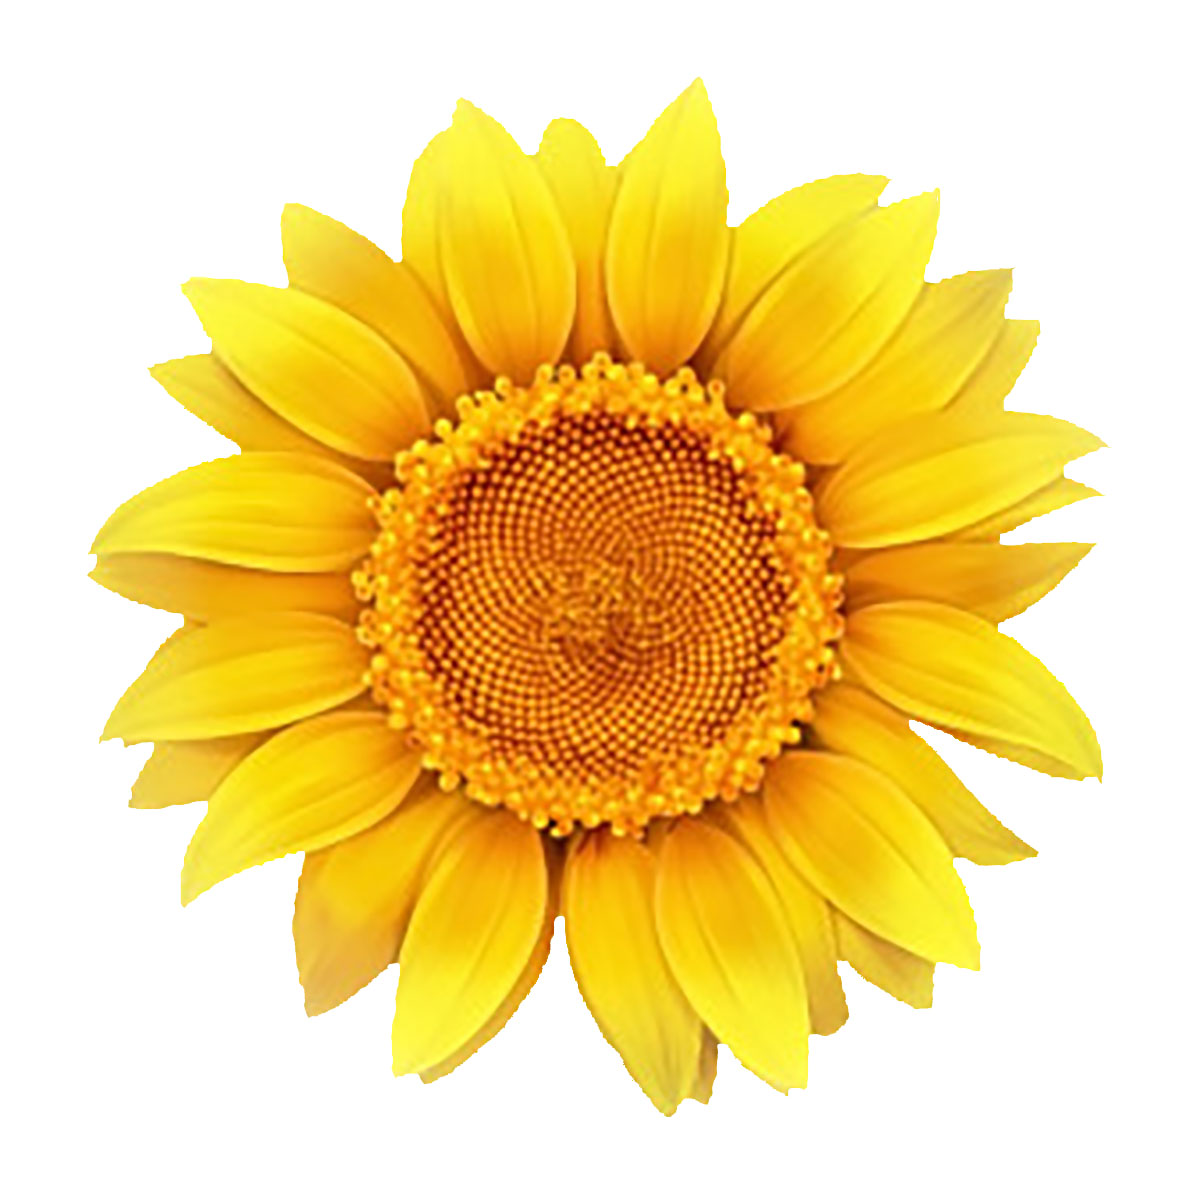 sunflower-1200.jpg